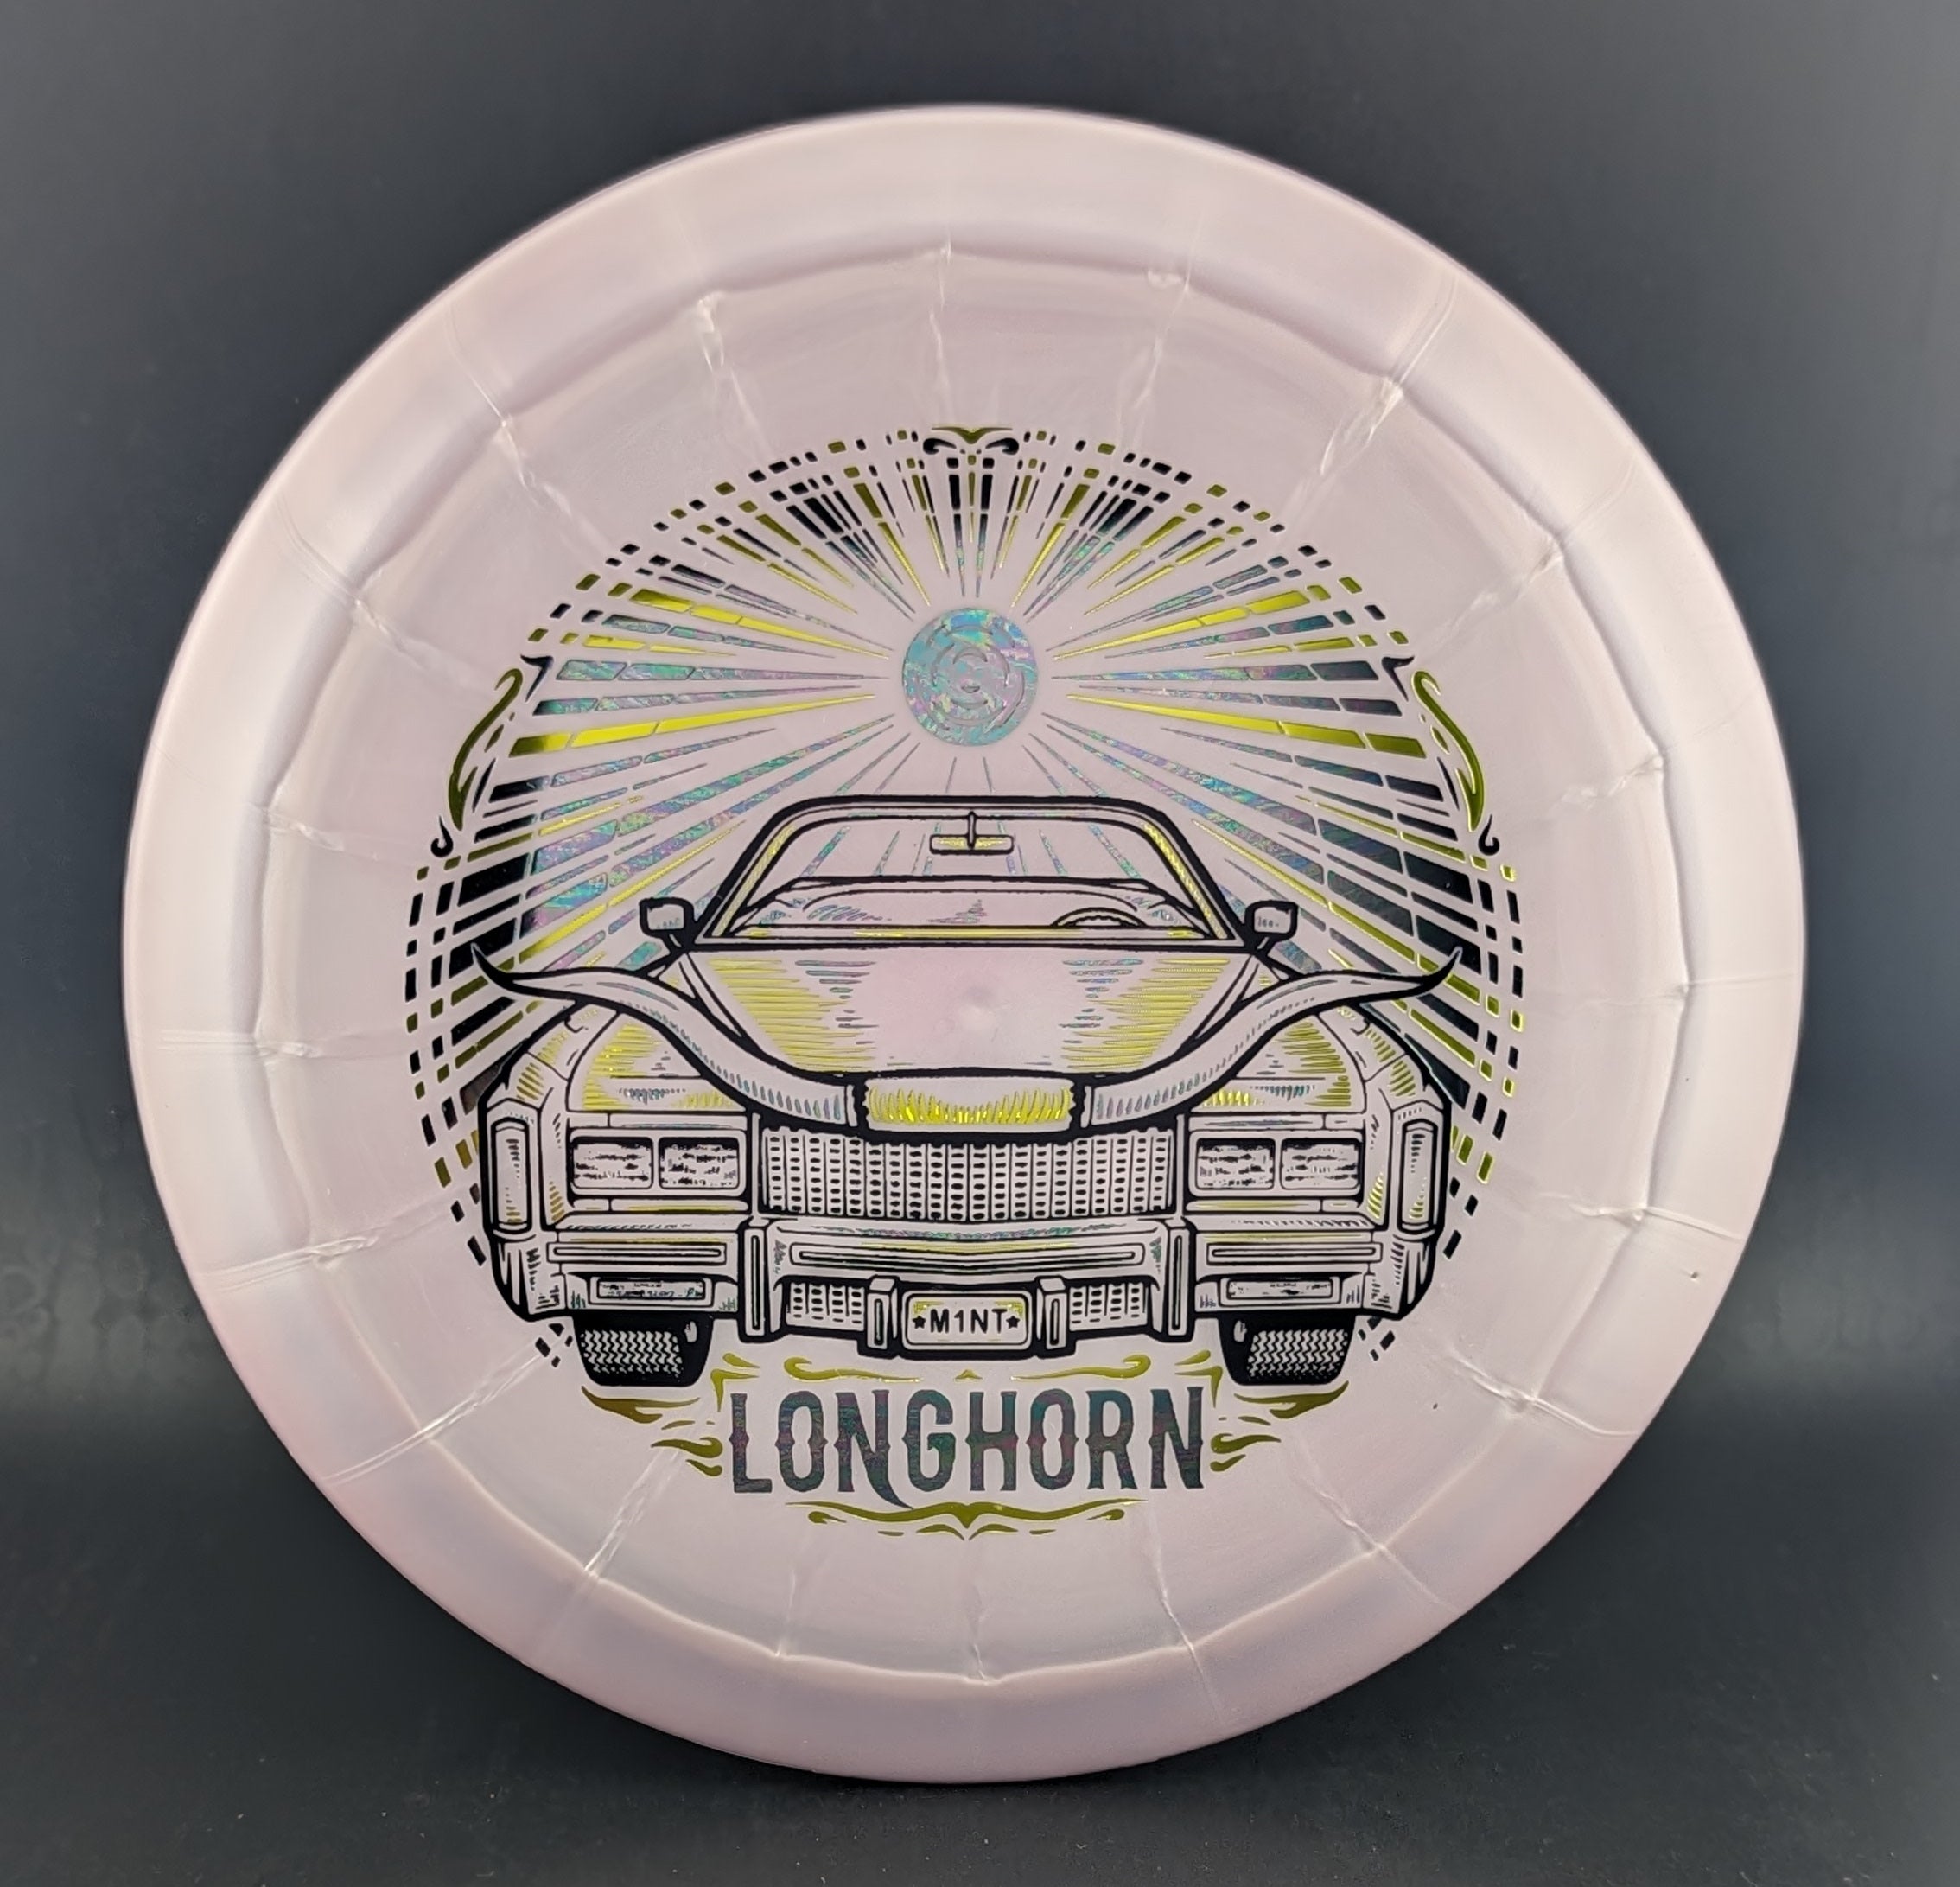 Sublime Longhorn - 0